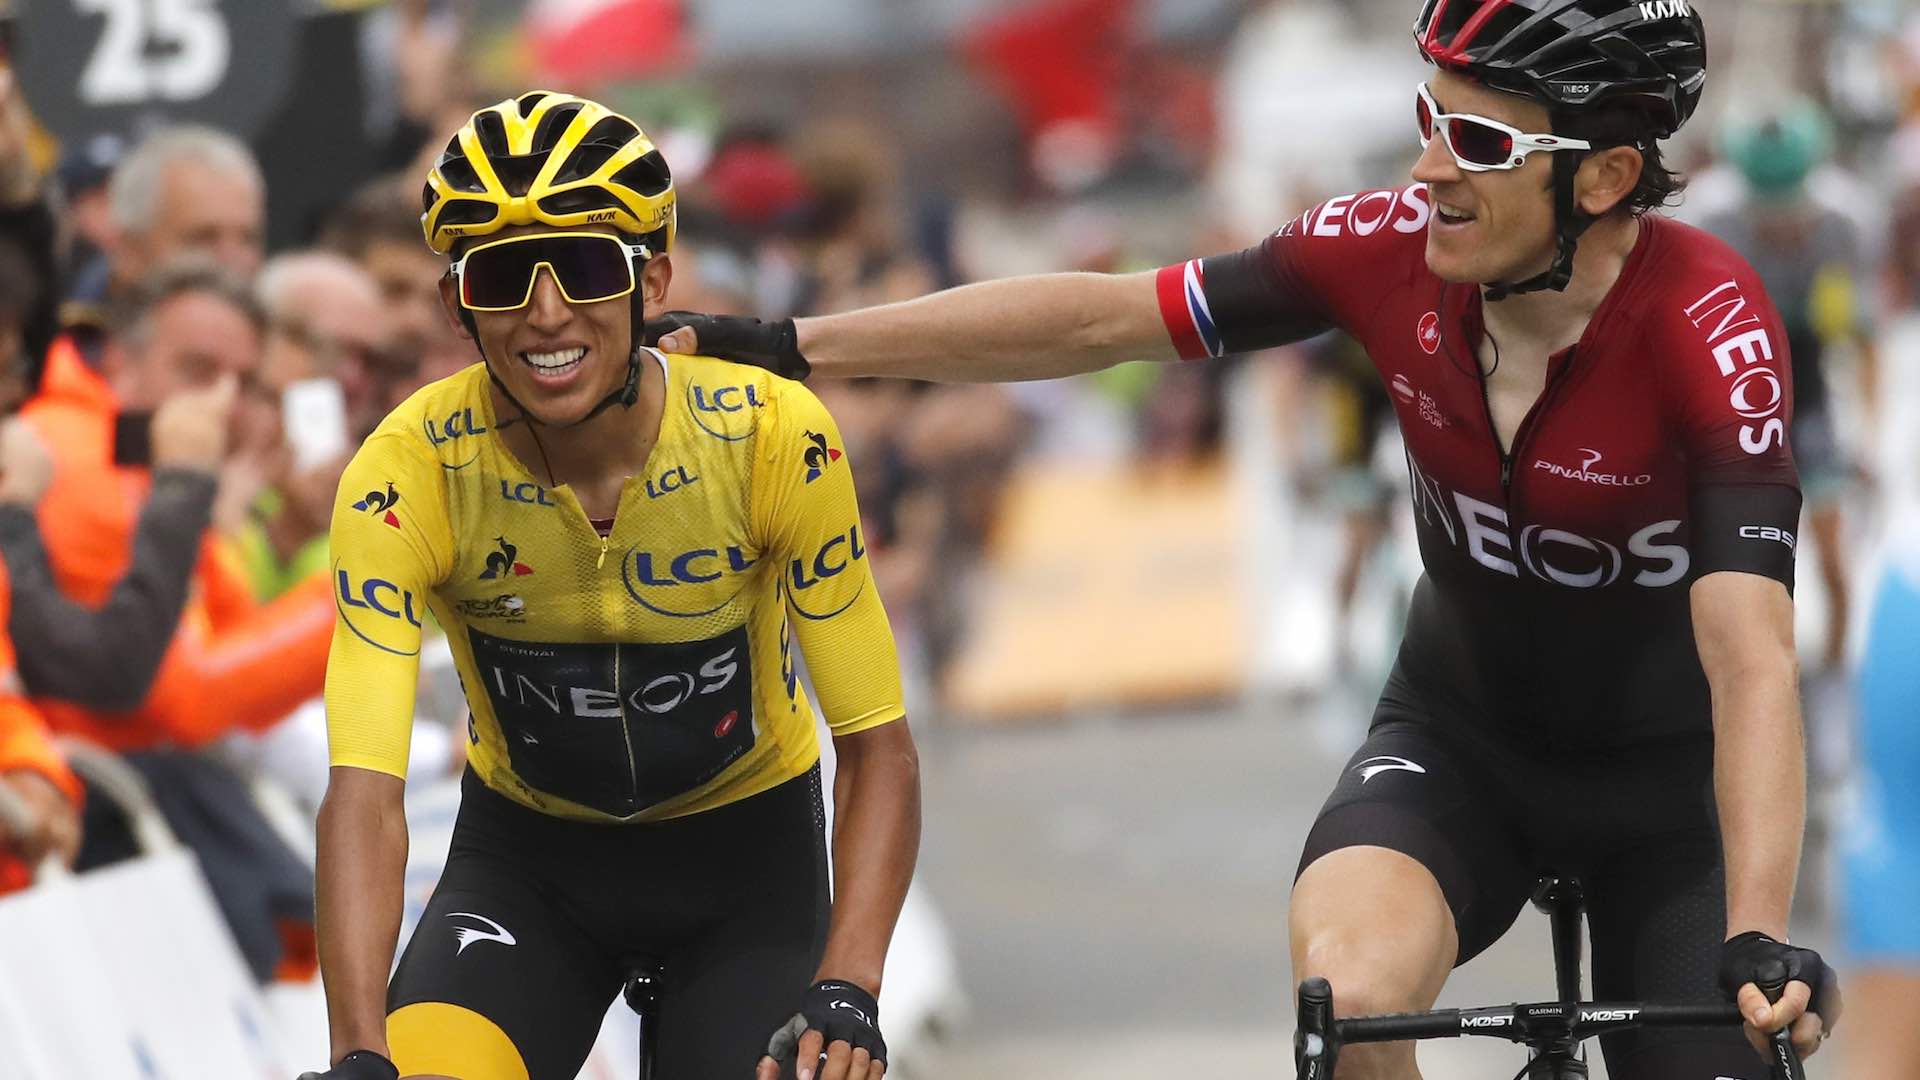 Egan Bernal reina en el Tour y Colombia cumple su sueño amarillo